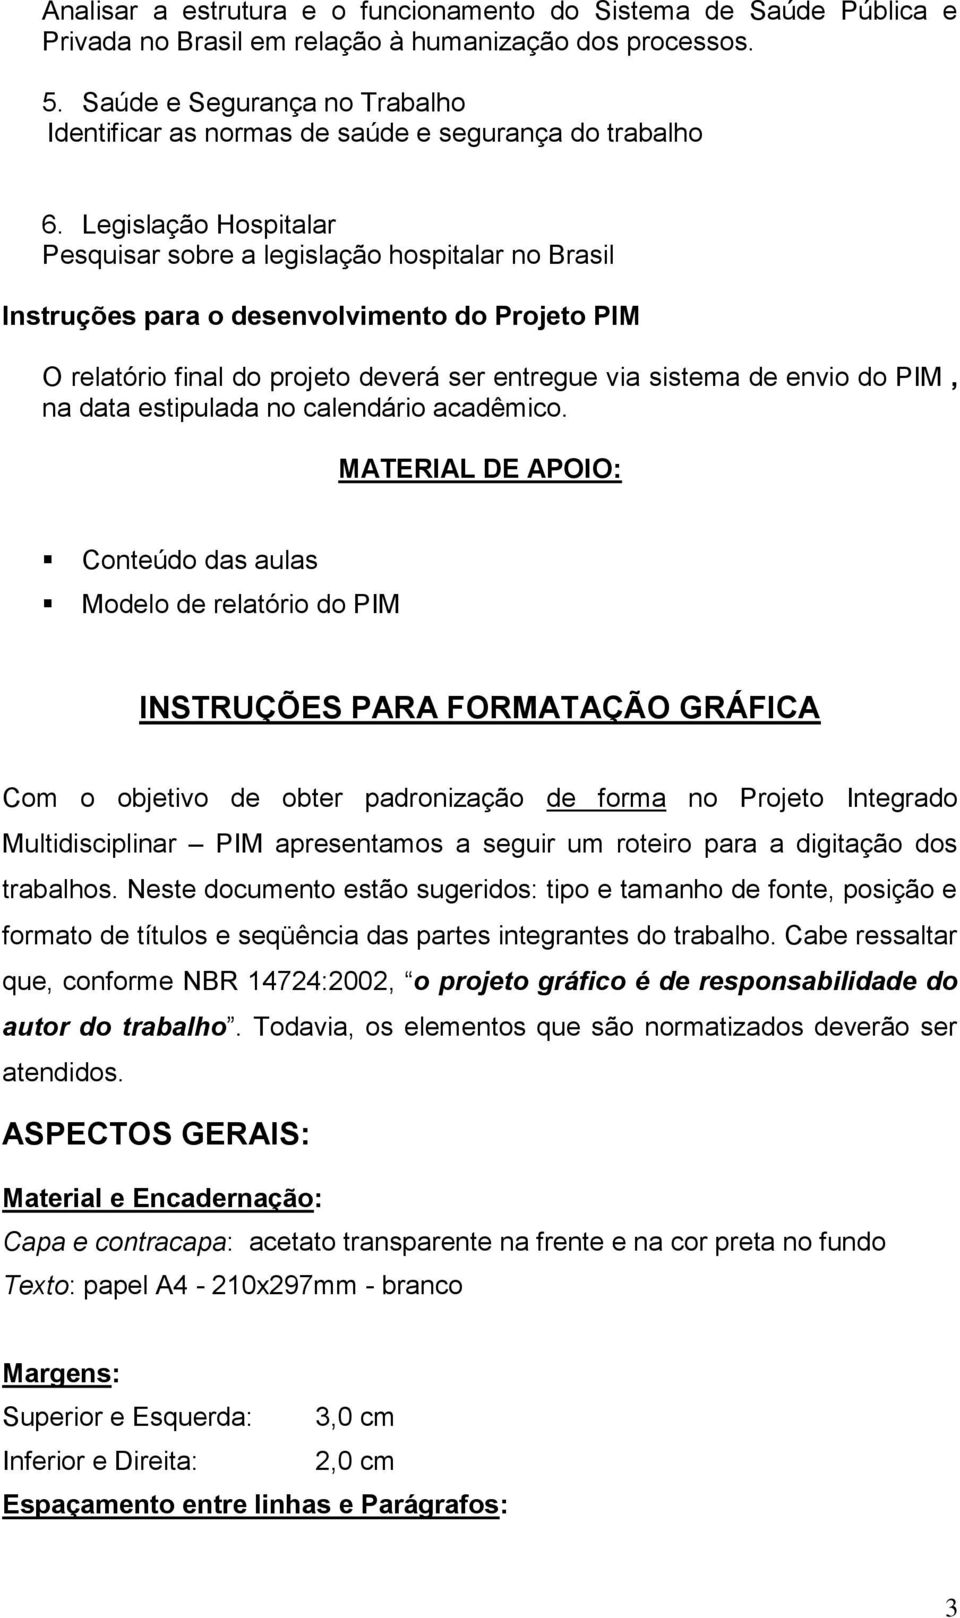 Legislação Hospitalar Pesquisar sobre a legislação hospitalar no Brasil Instruções para o desenvolvimento do Projeto PIM O relatório final do projeto deverá ser entregue via sistema de envio do PIM,